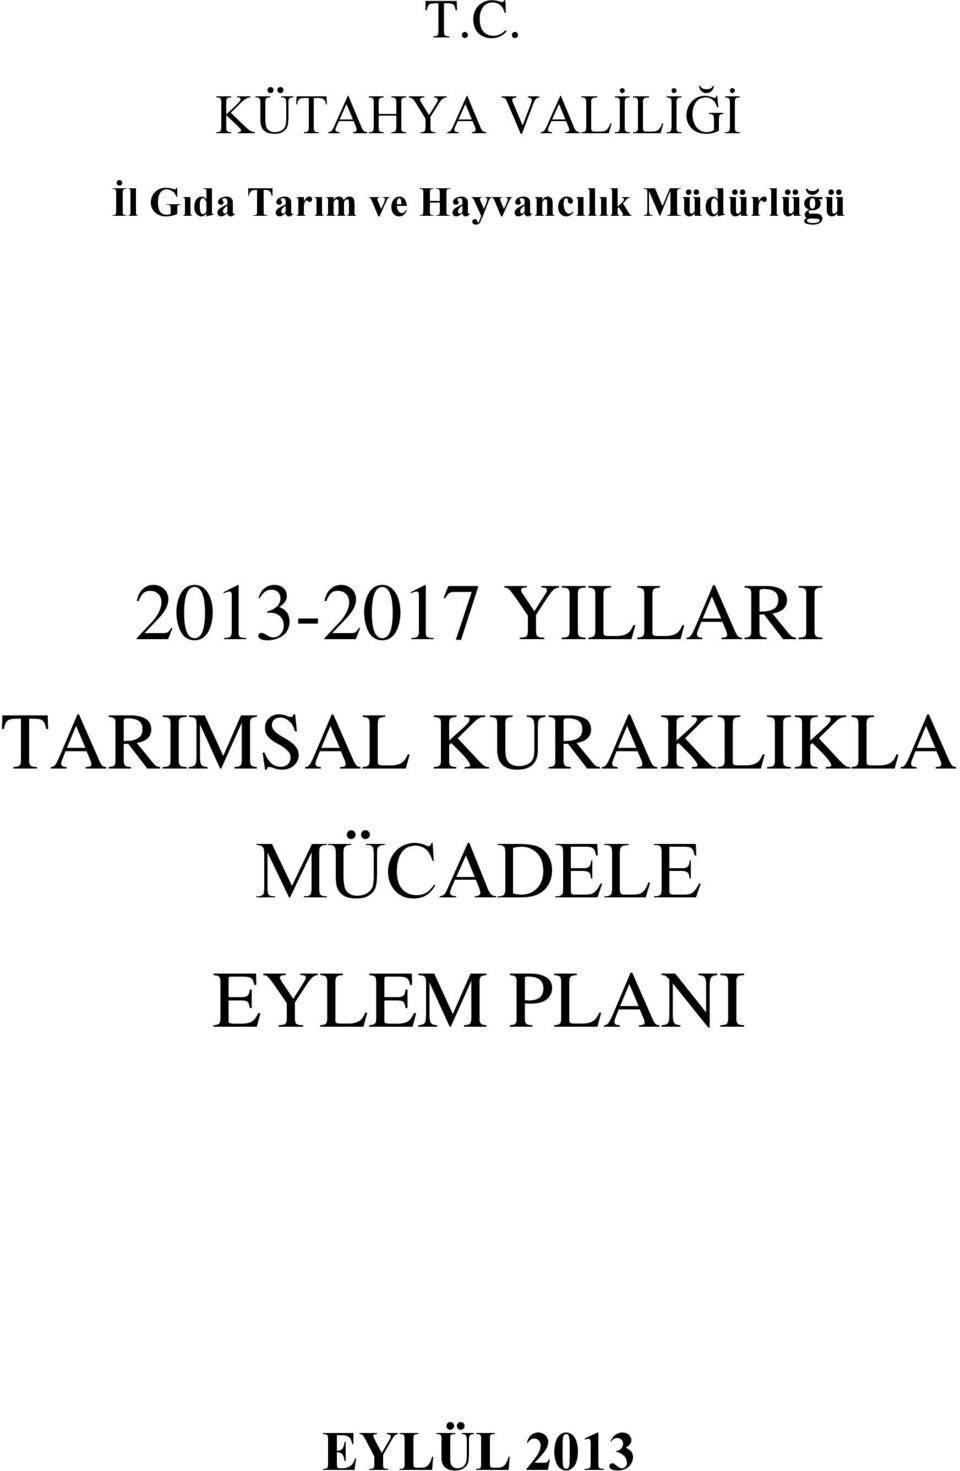 2013-2017 YILLARI TARIMSAL